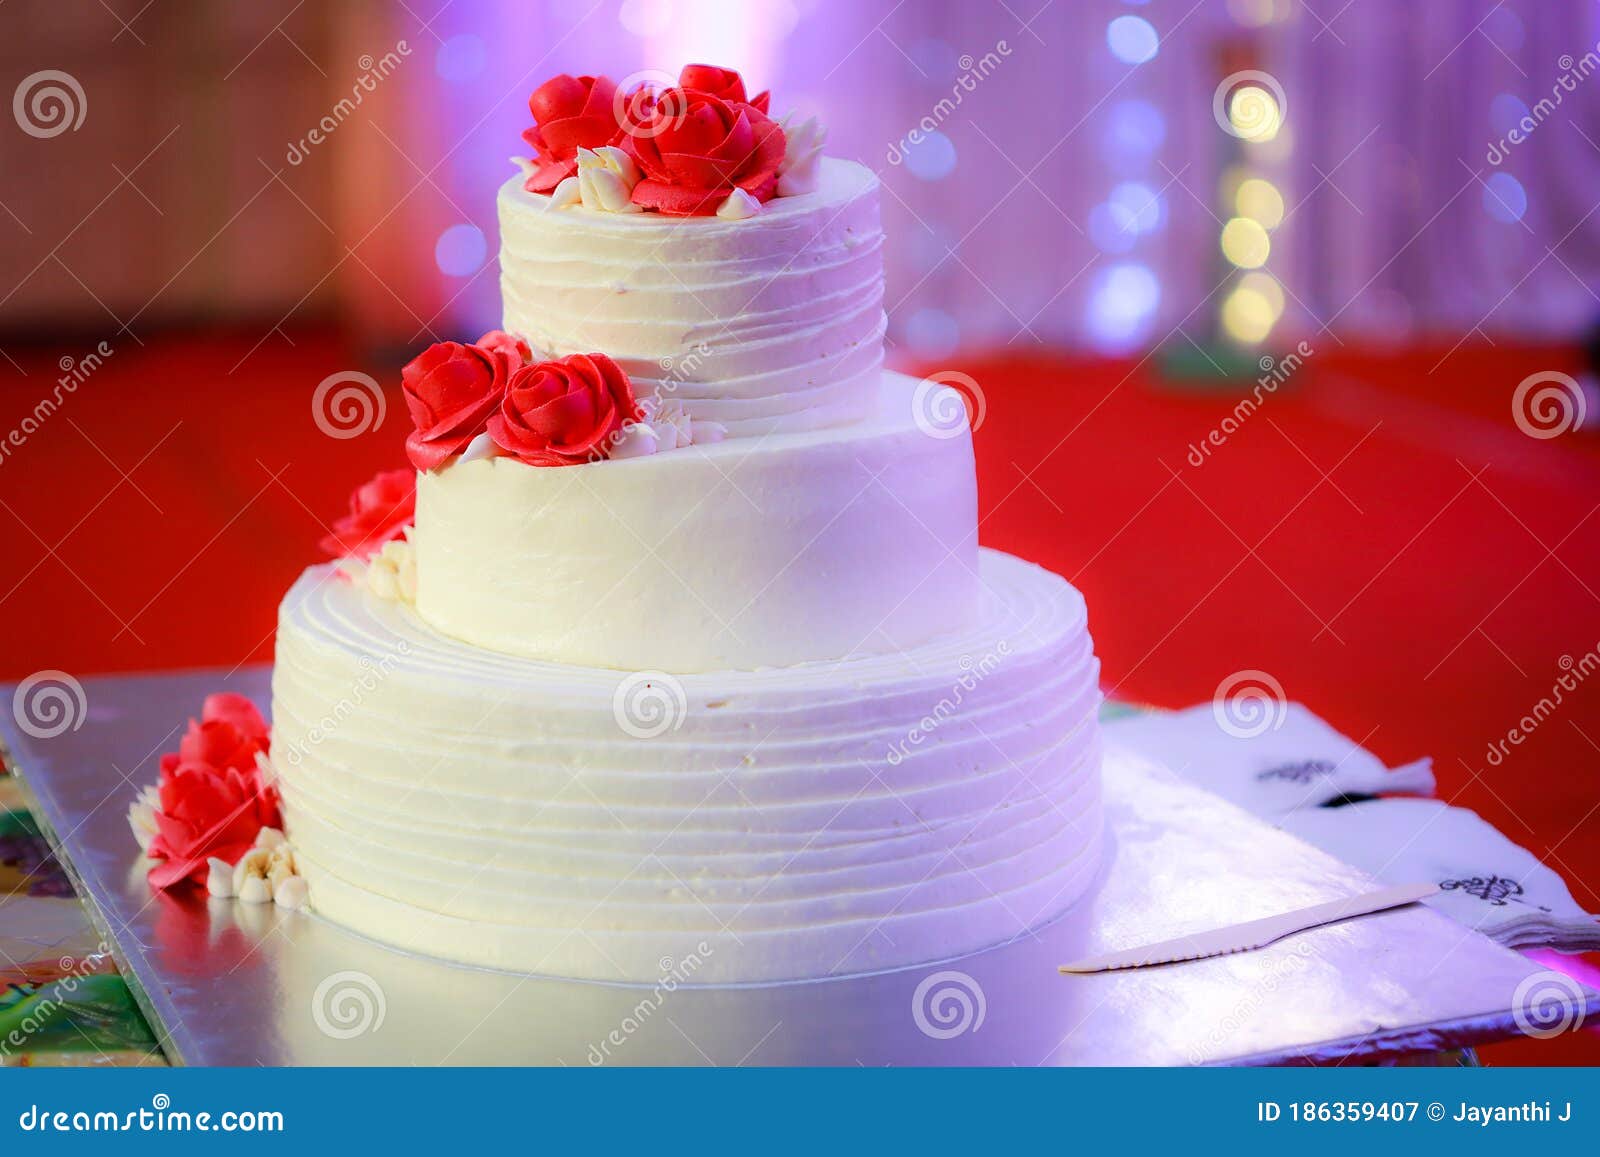 Wedding vanilla step cake stock image. Image of colorful - 186359407